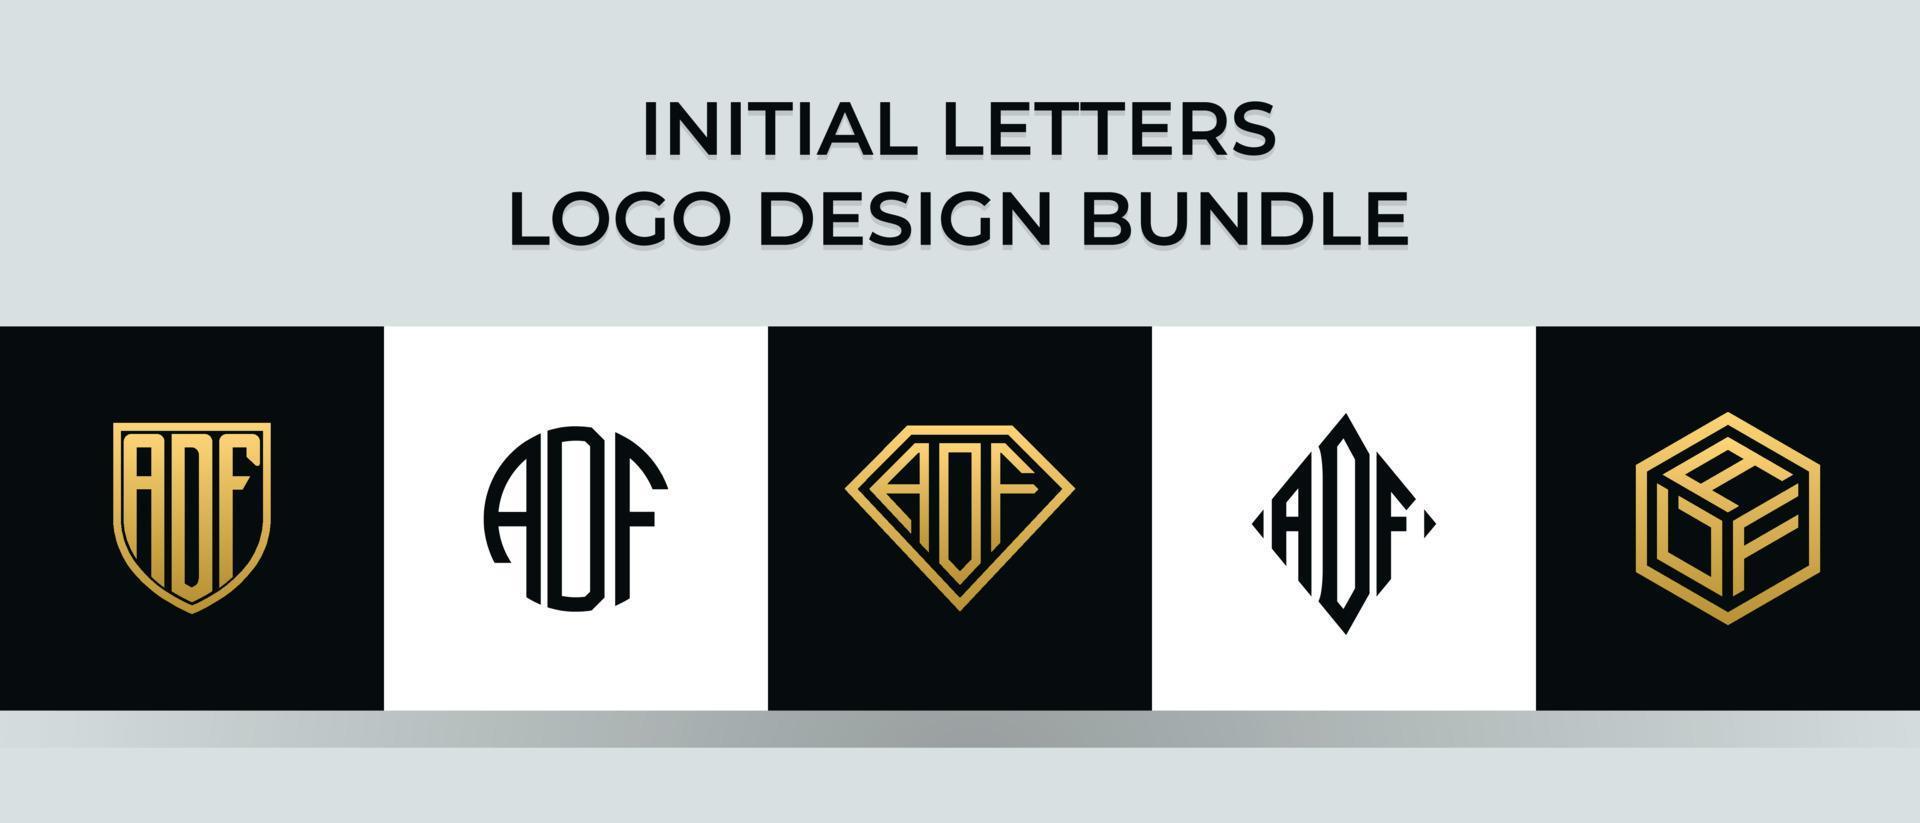 lettere iniziali adf logo design bundle vettore